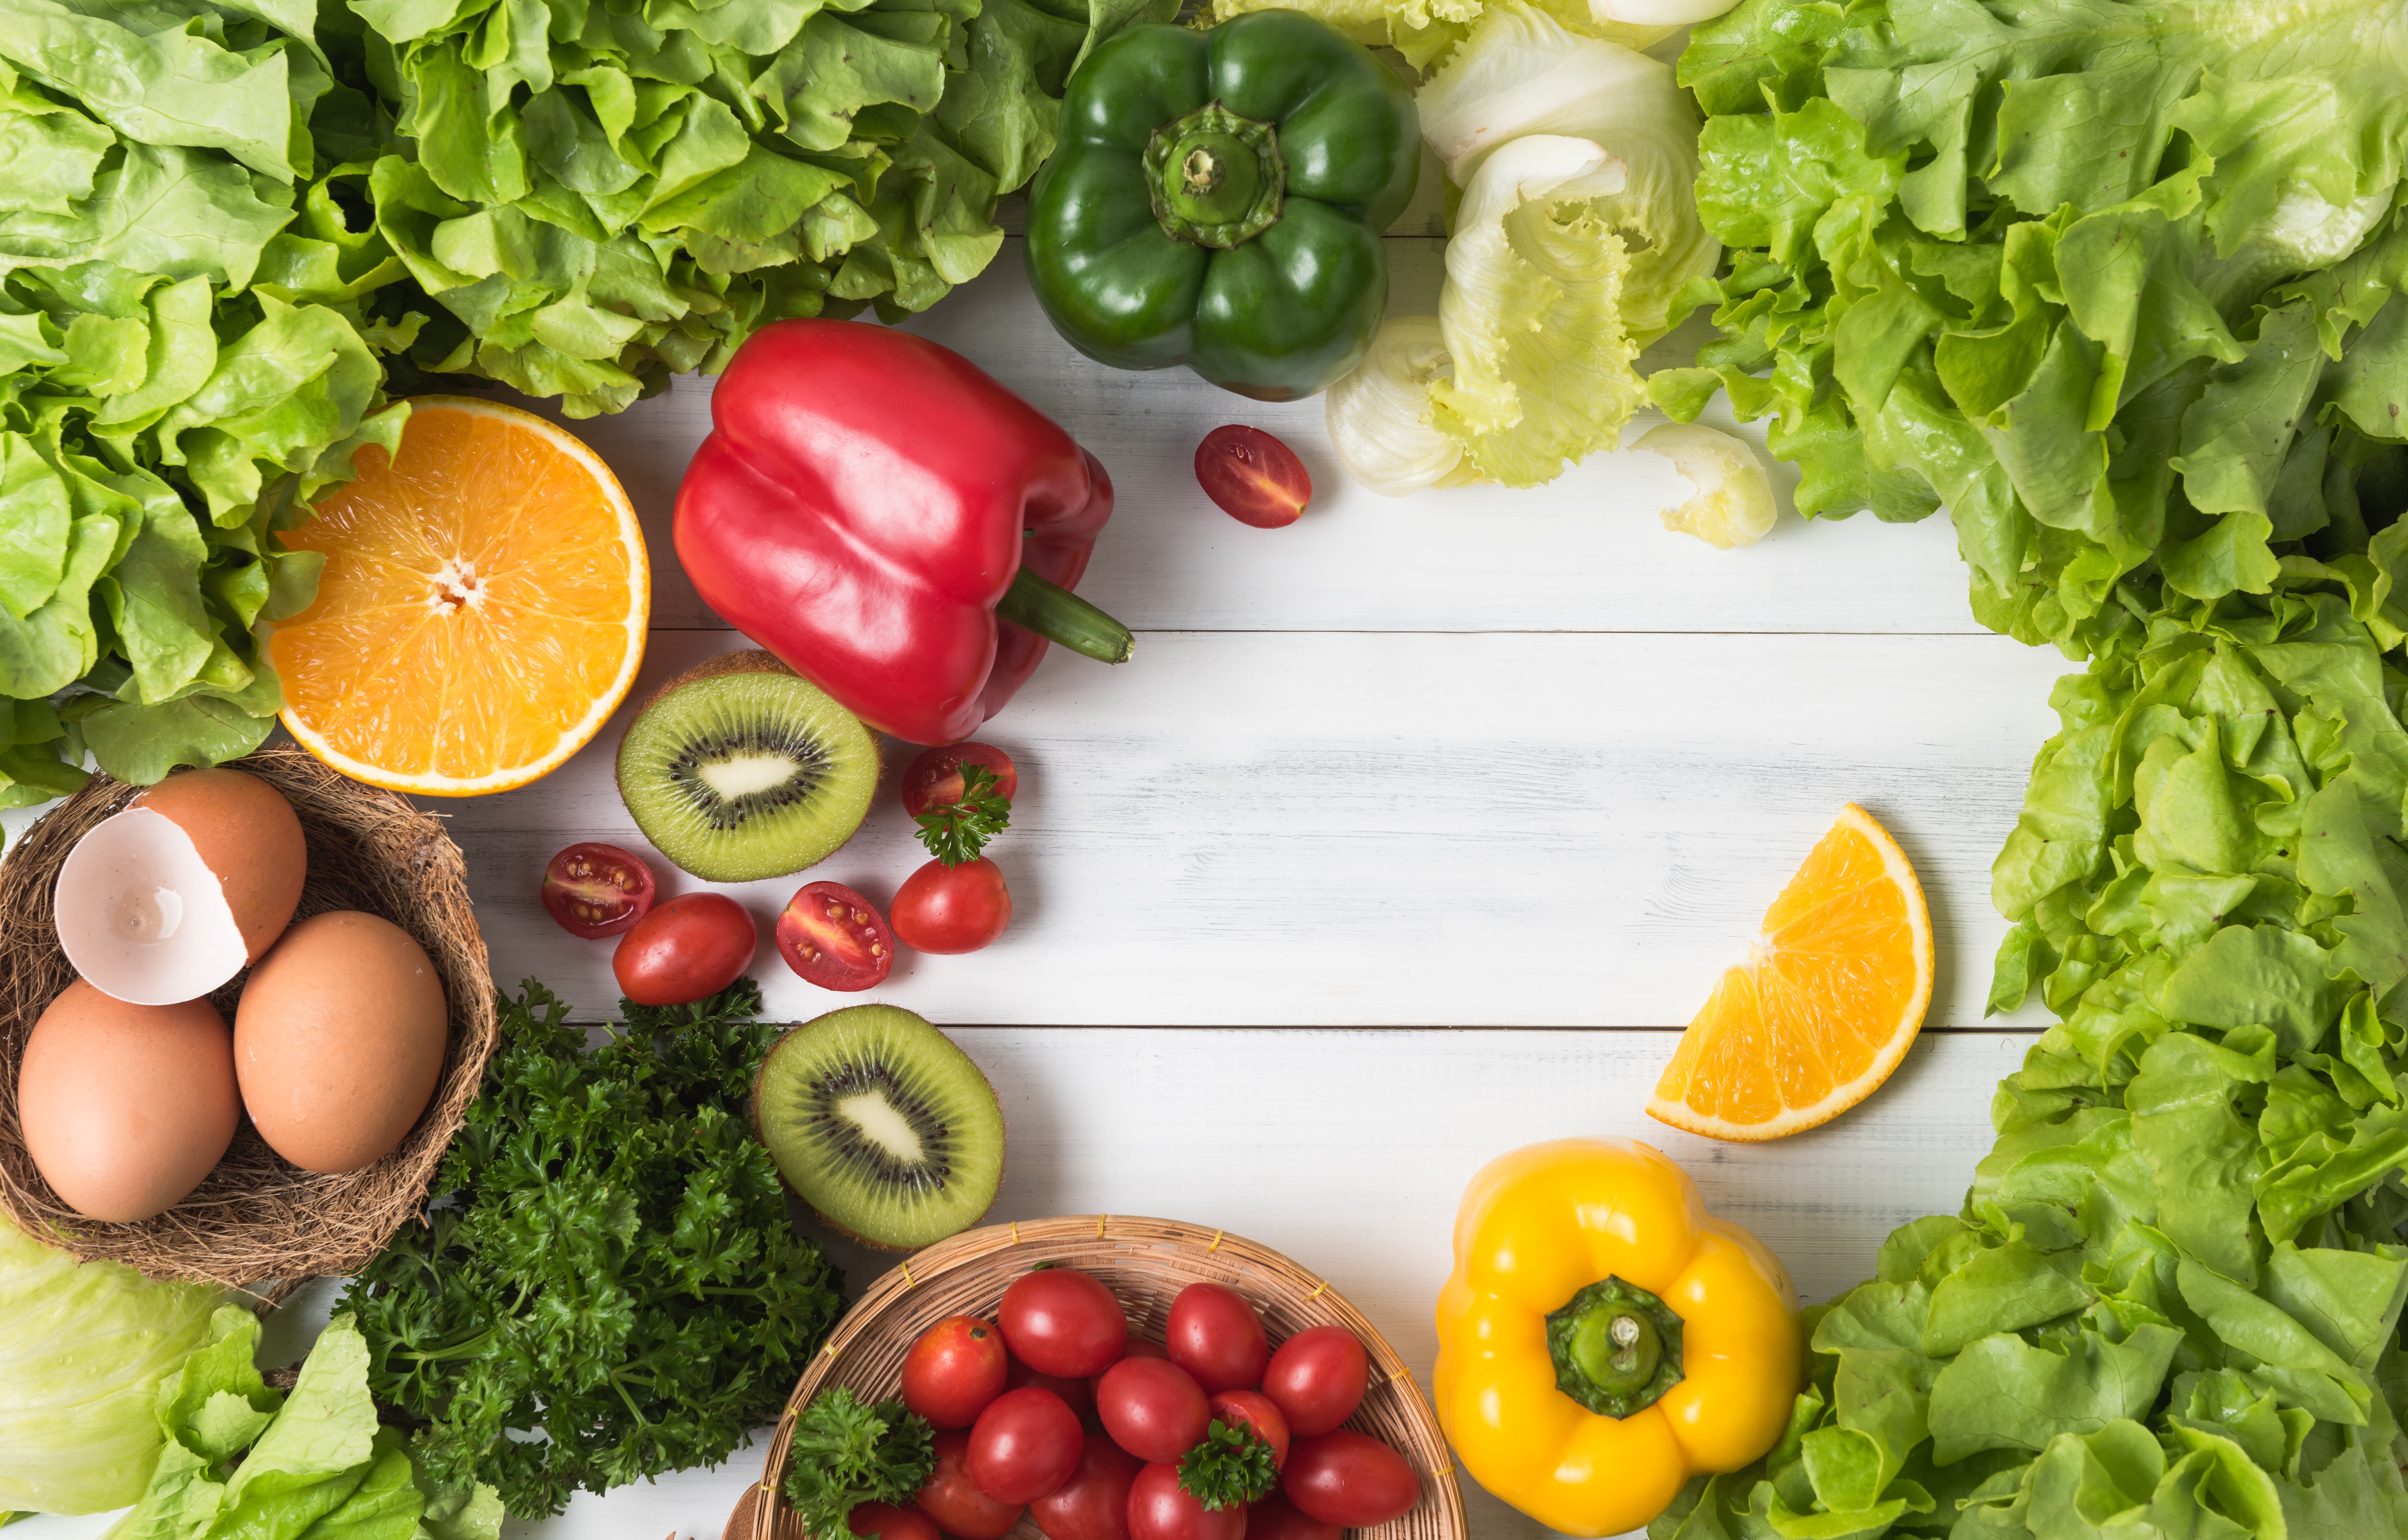 Colourful and crunchy fruit and vegetables can. Овощи и фрукты. Свежие овощи и зелень. Красивые овощи. Здоровая пища.